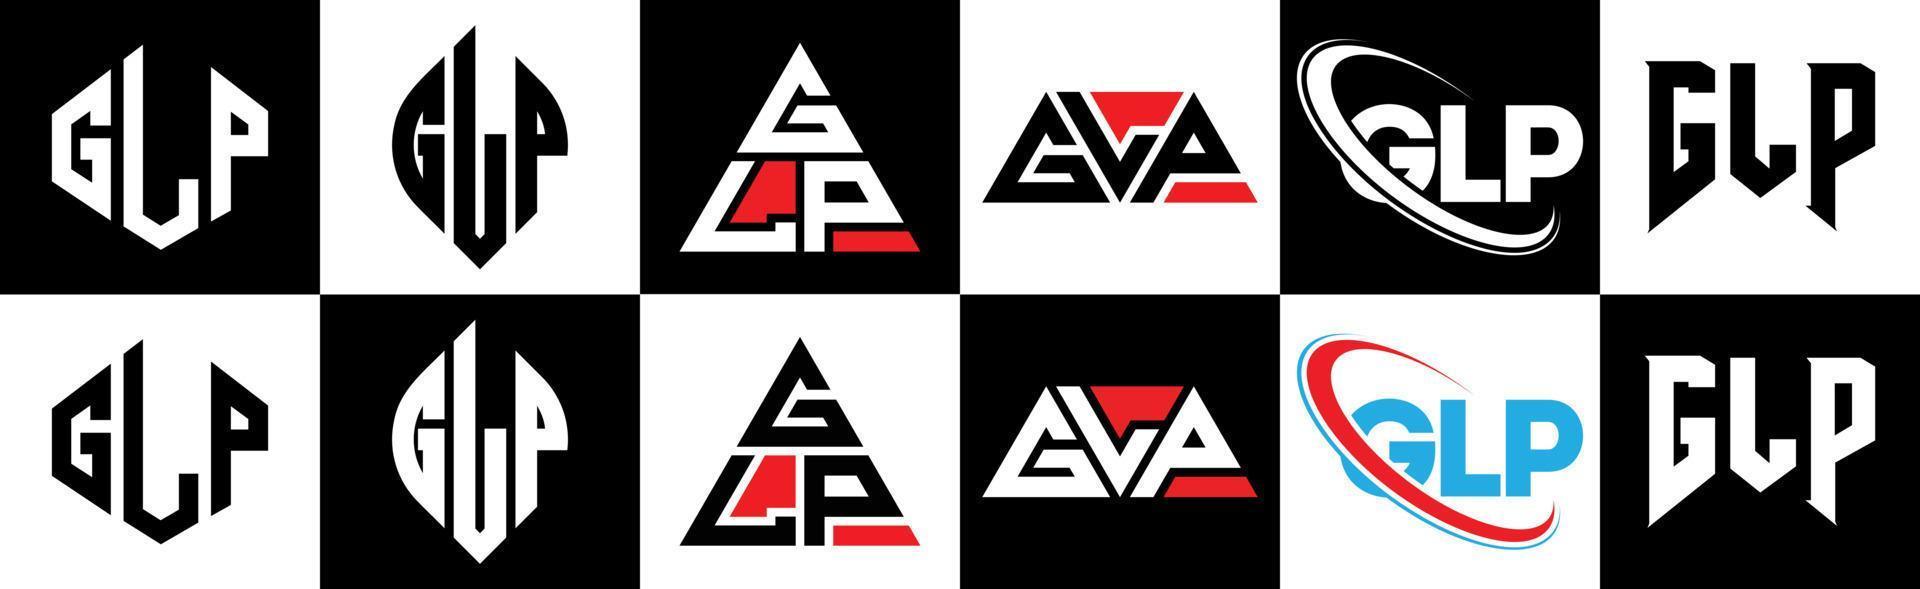 glp-Buchstaben-Logo-Design in sechs Stilen. glp polygon, kreis, dreieck, sechseck, flacher und einfacher stil mit schwarz-weißem buchstabenlogo in einer zeichenfläche. glp minimalistisches und klassisches logo vektor